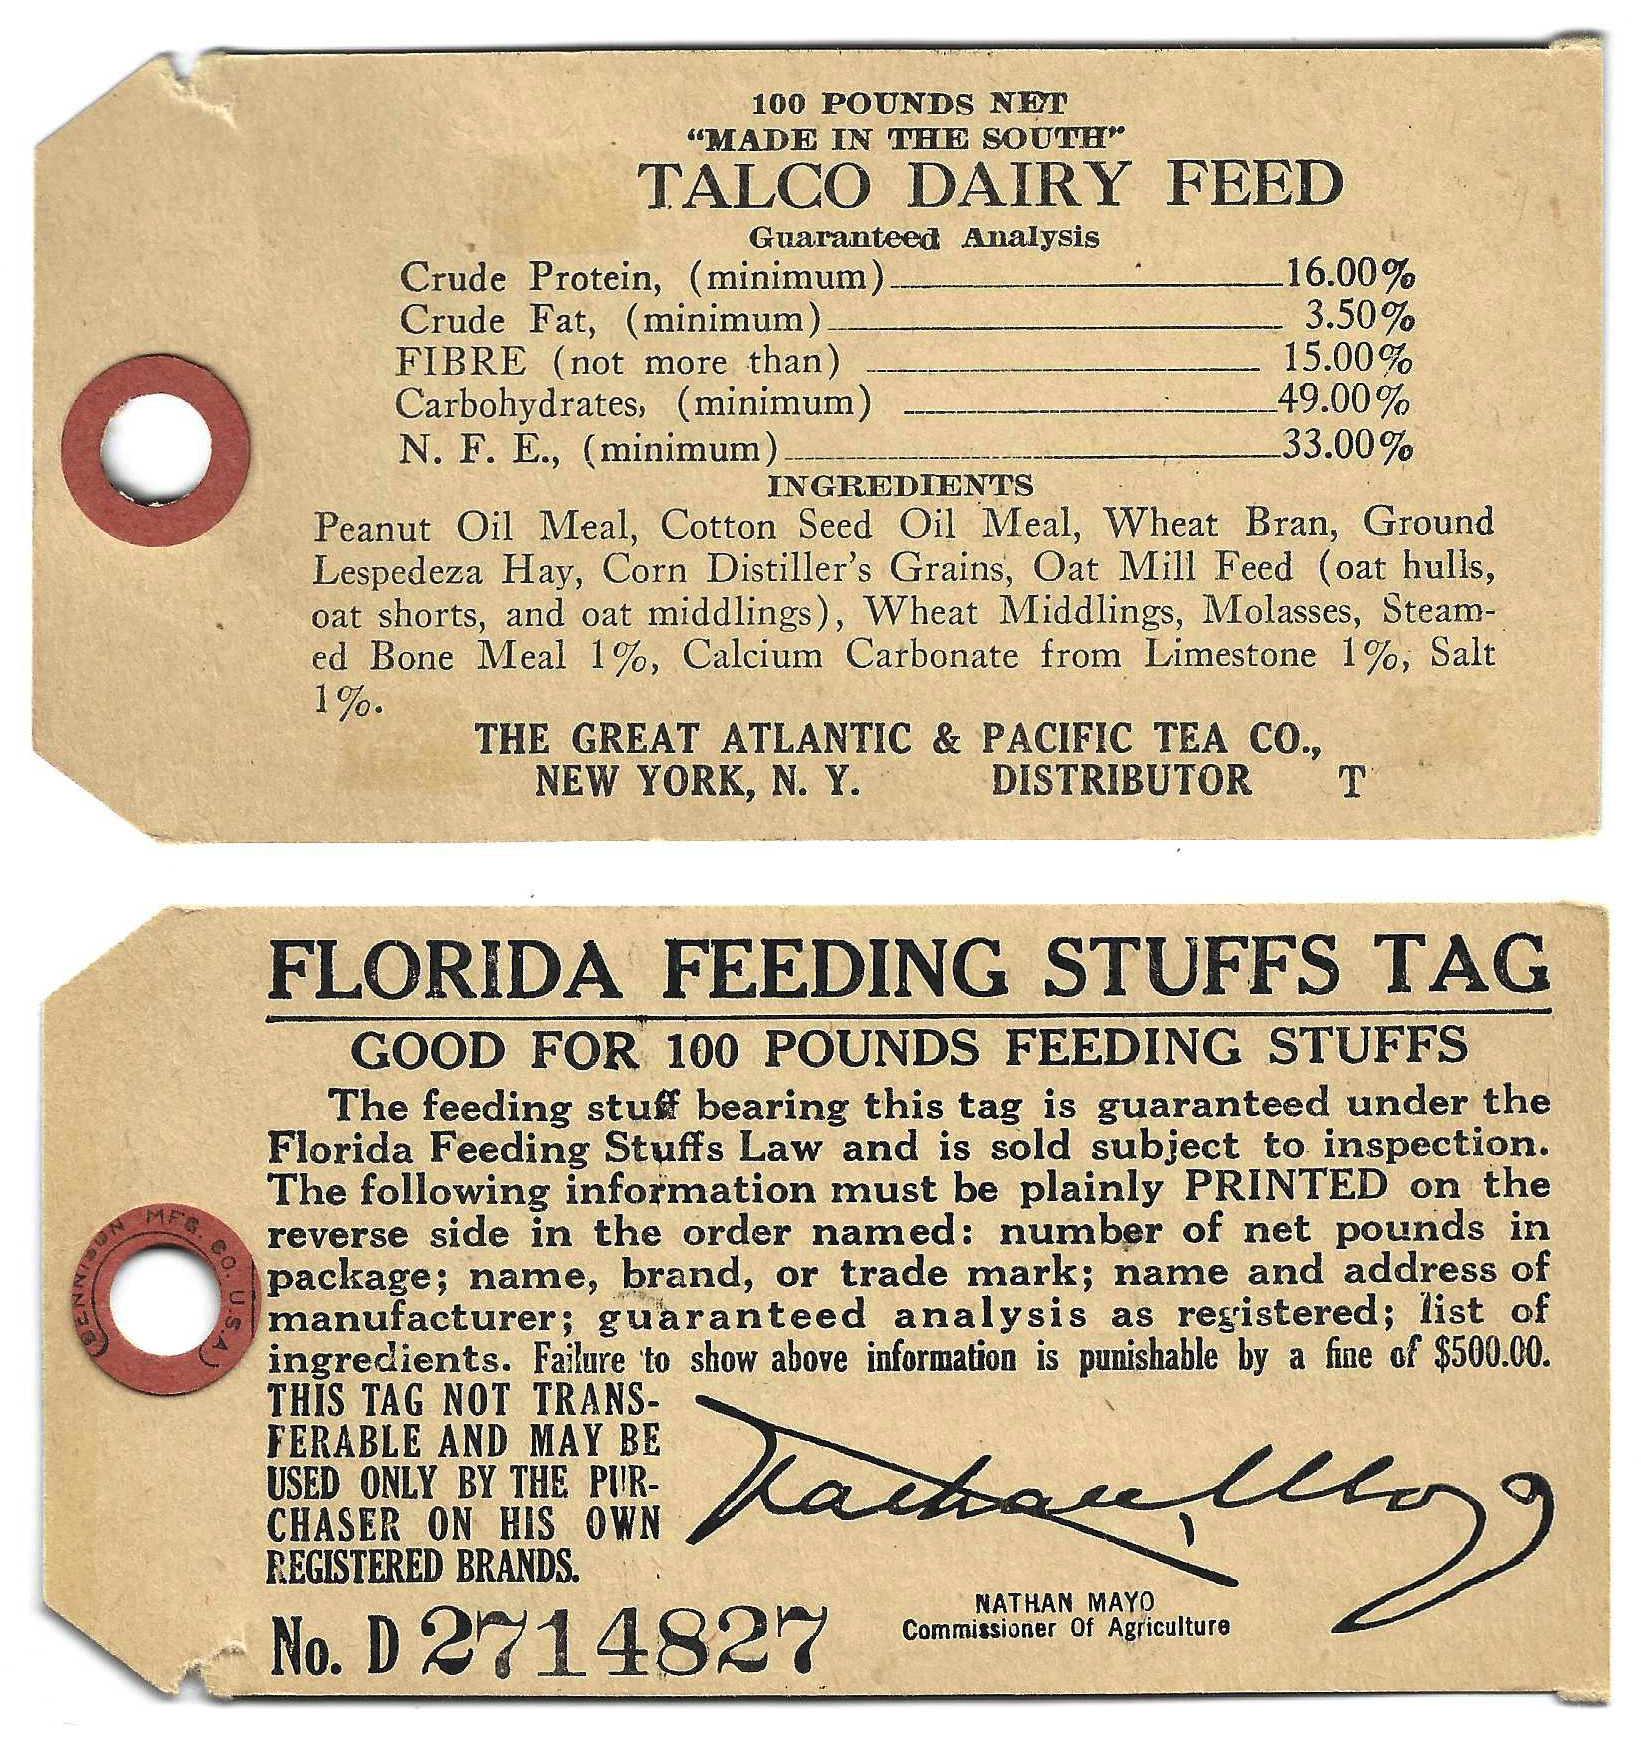 FL feed tag FET 13 100 lbs U VF w/ Talco Dairy Feed imprint on reverse